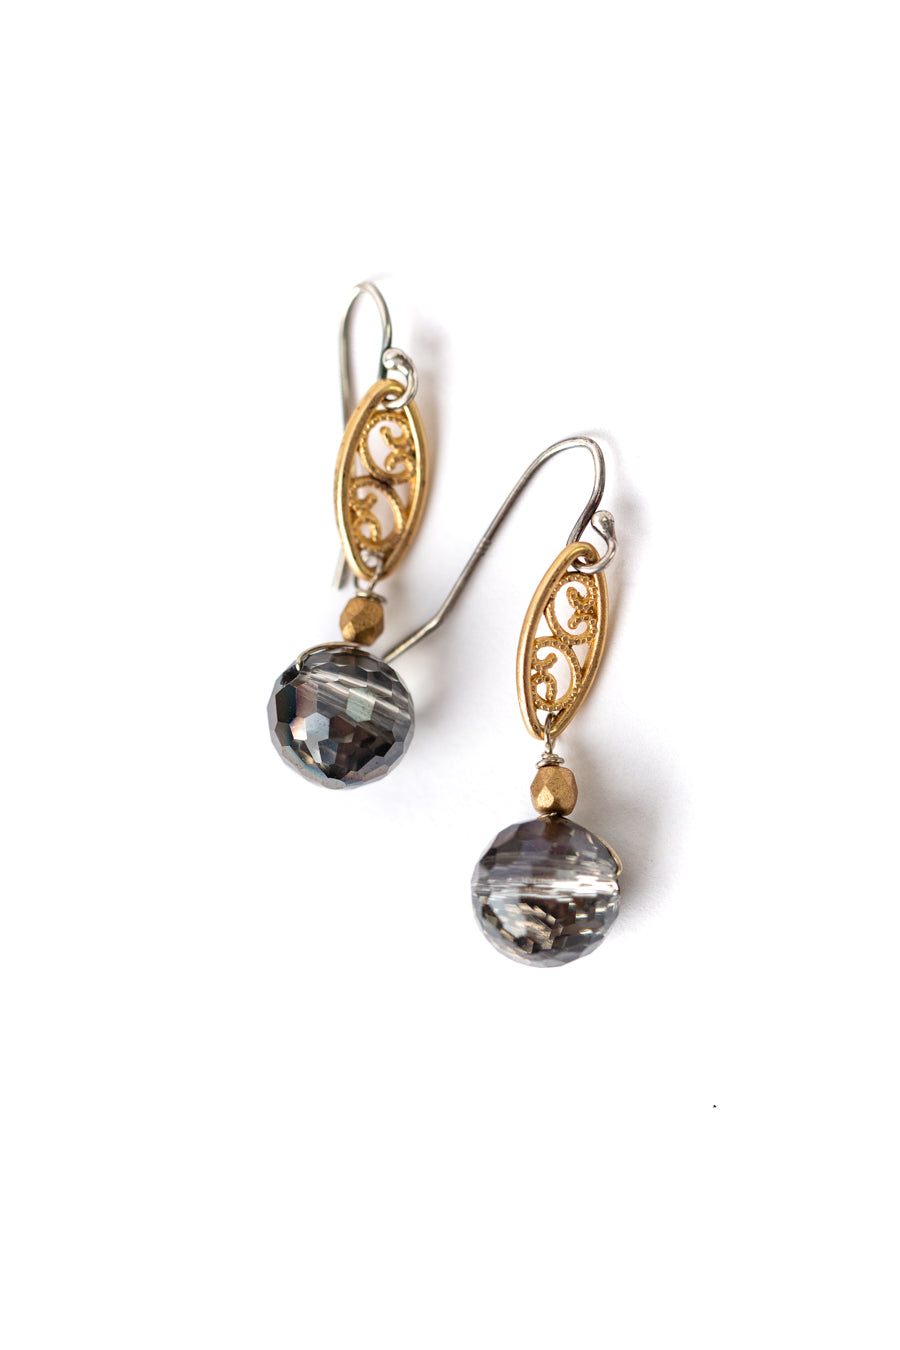 Silver & Gold Czech Glass Filigree Dangle Earrings (limited)